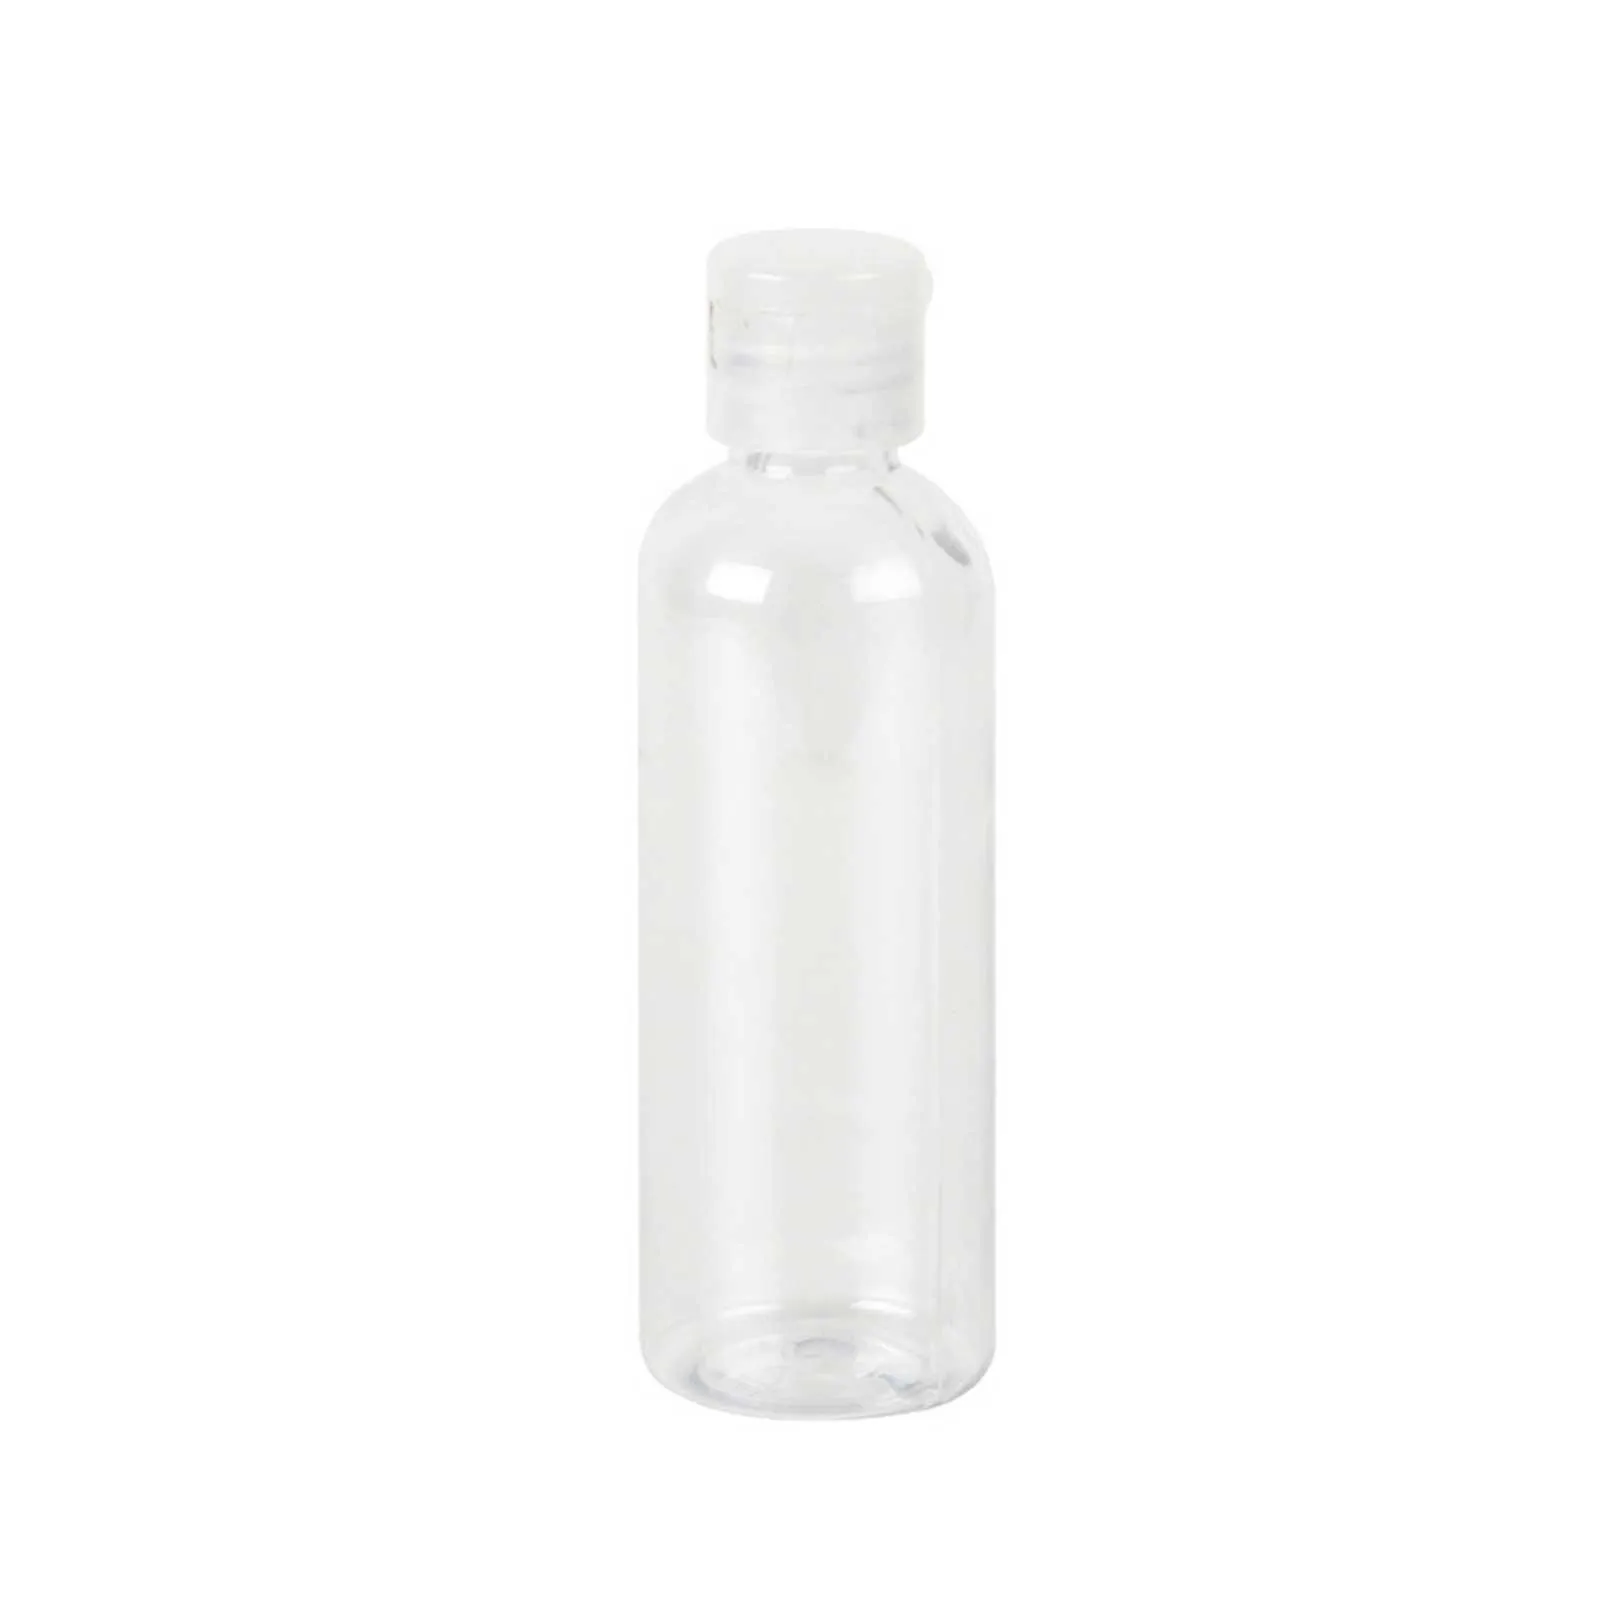 8PCS Spreji 100ML Priehľadná Fľaša Malý Sprej Prázdne Plastové Fľaše Kvapaliny Travel Kit 100 ml Transparentná Kvapalina Cestovanie